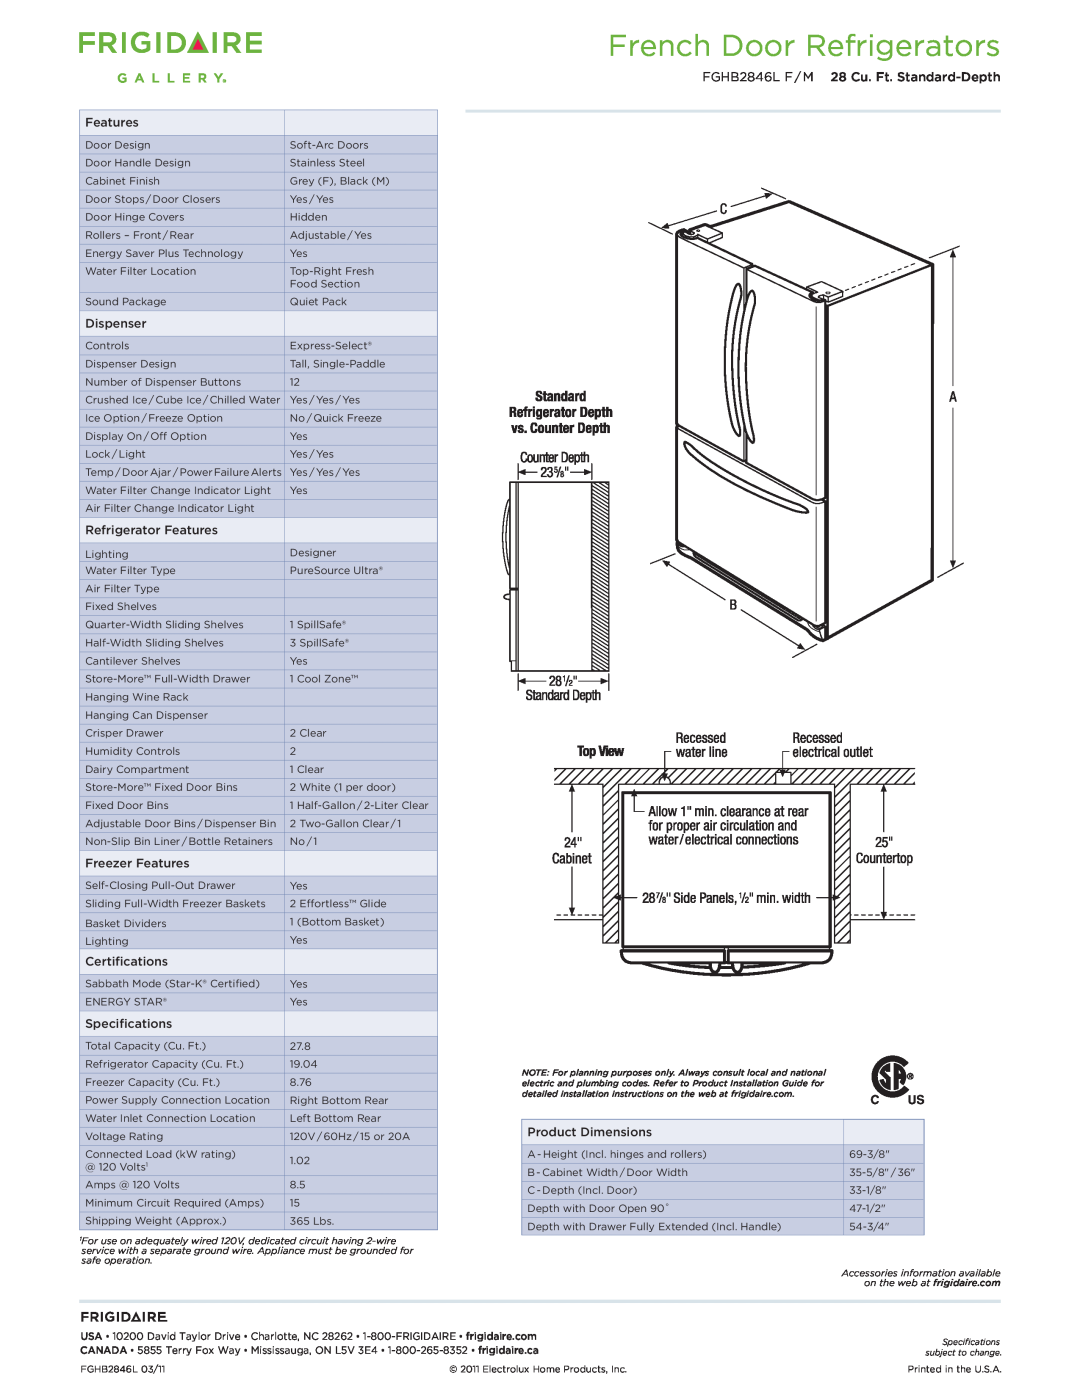 Frigidaire FGHB2846L F/M dimensions French Door Refrigerators, FGHB2846L F / M 28 Cu. Ft. Standard-Depth 